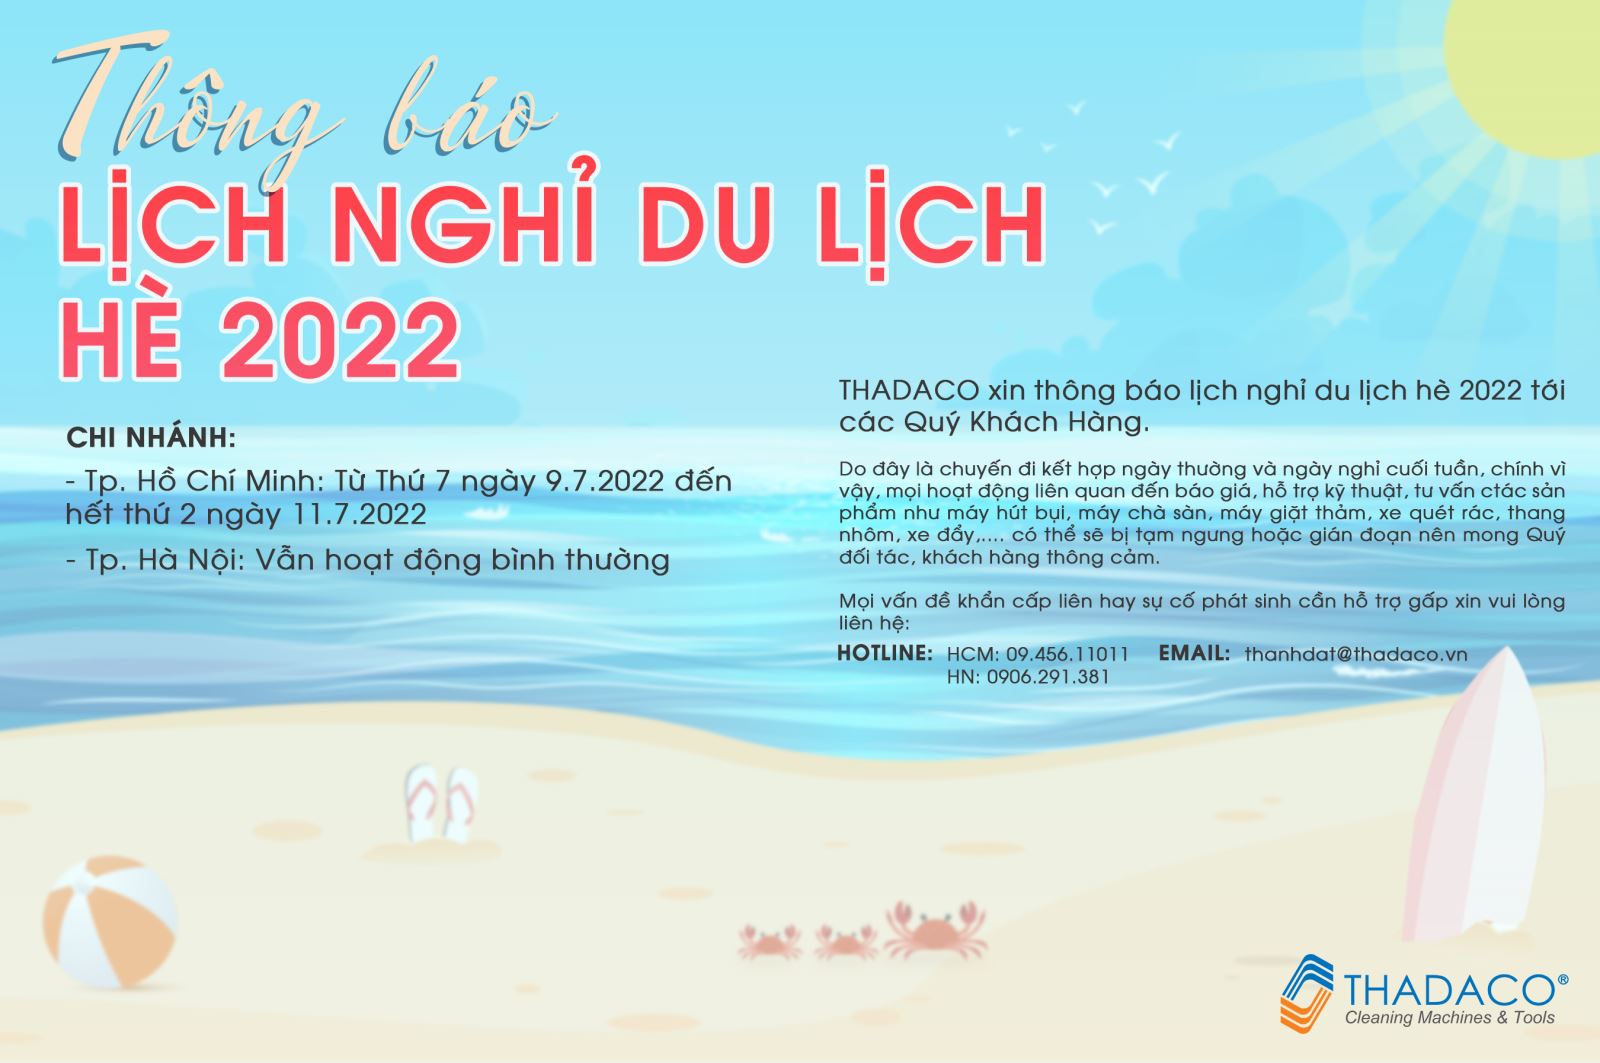 nghi-du-lich-2022-thadaco